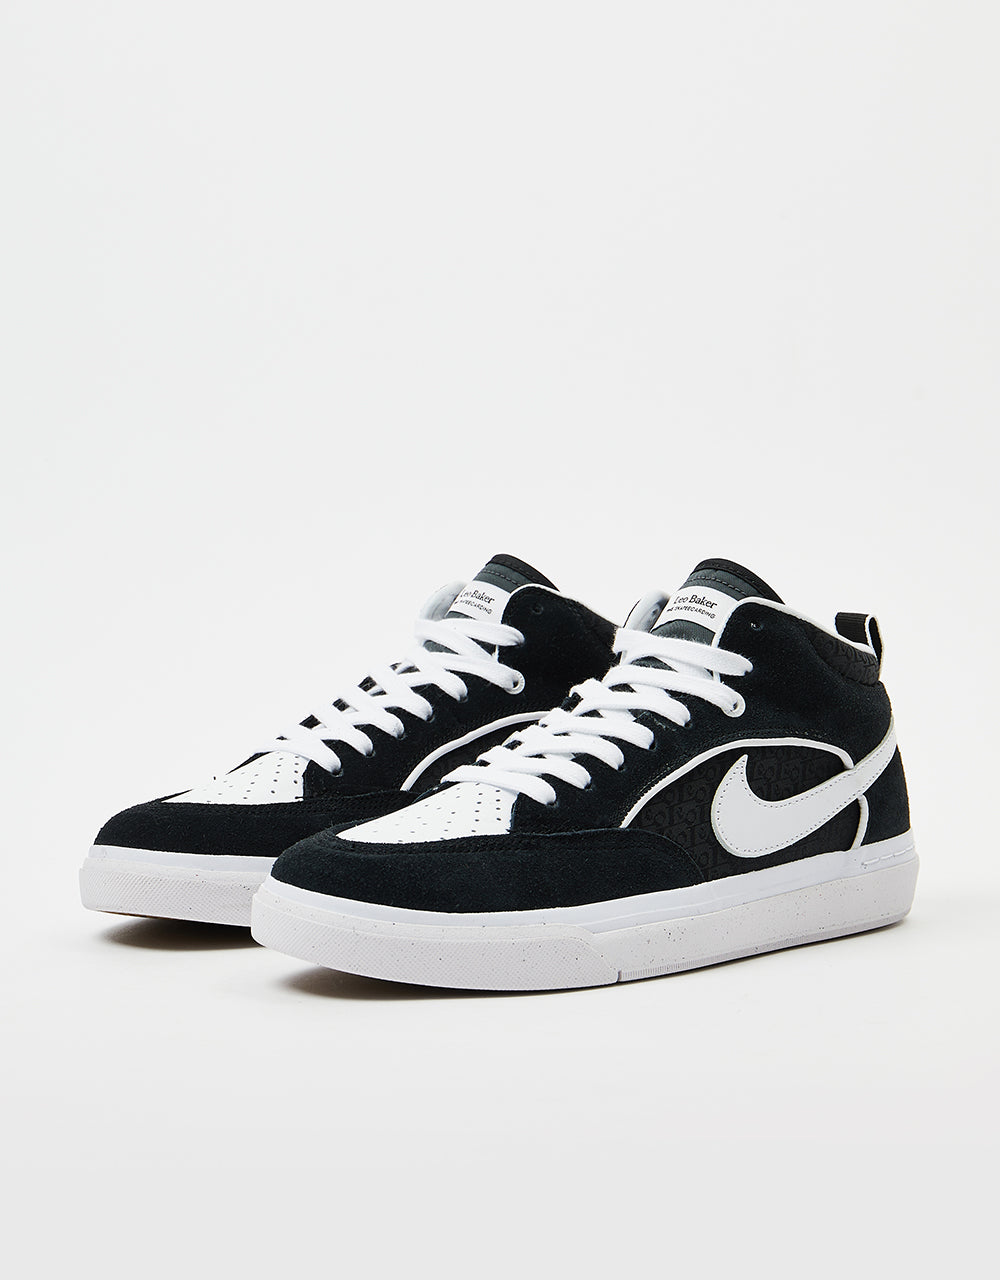 Nike SB React Leo Skate Shoes - Black/White-Black